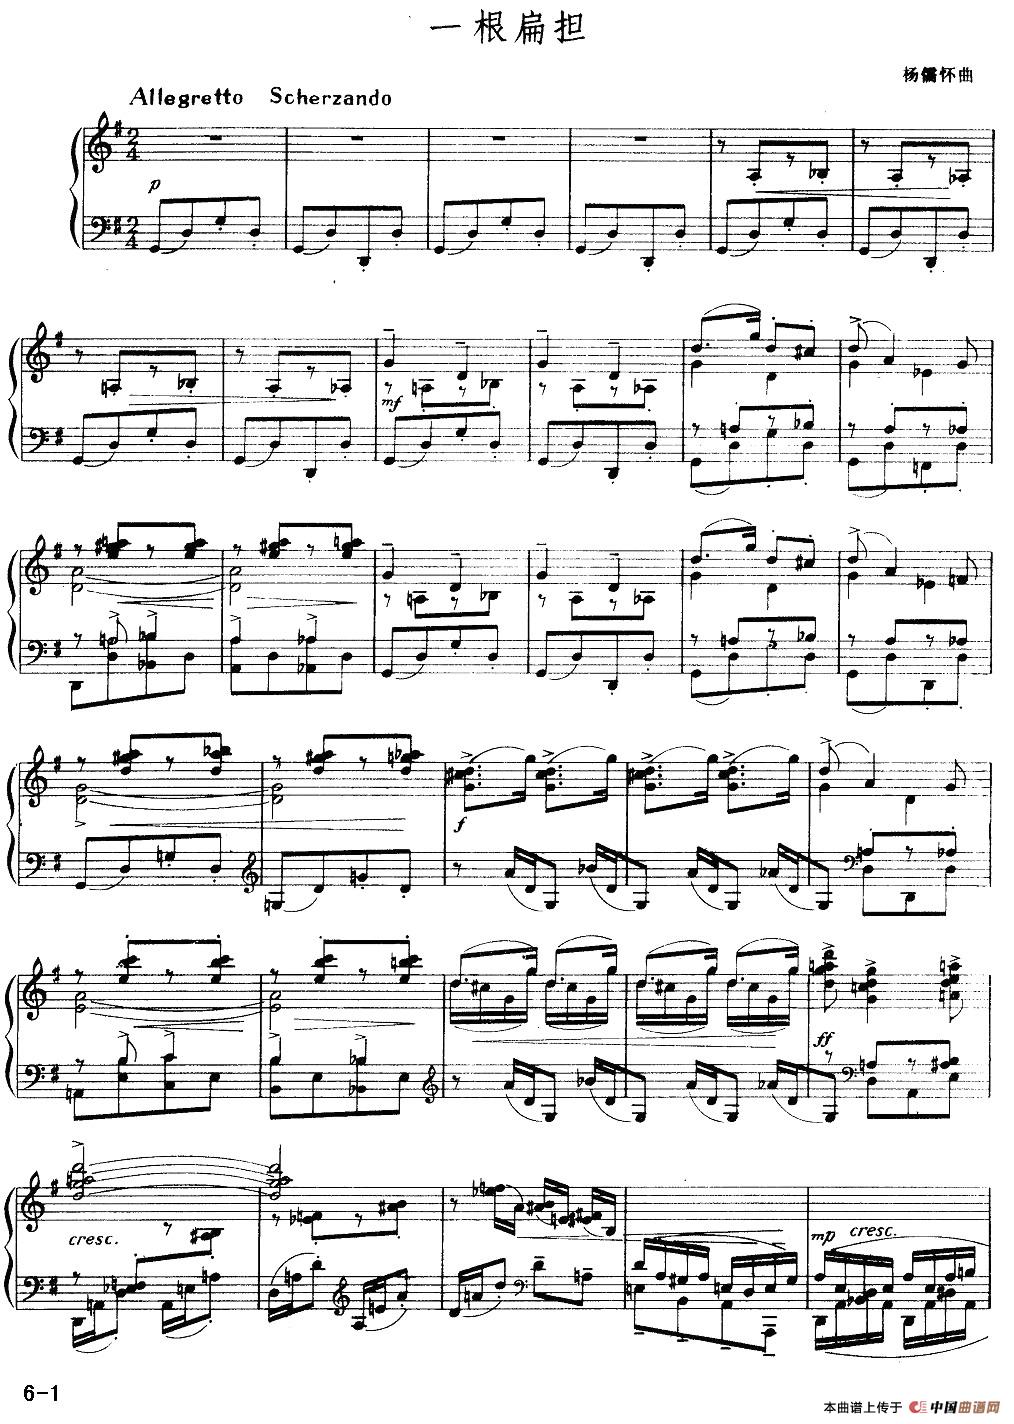 《一根扁担》钢琴曲谱图分享